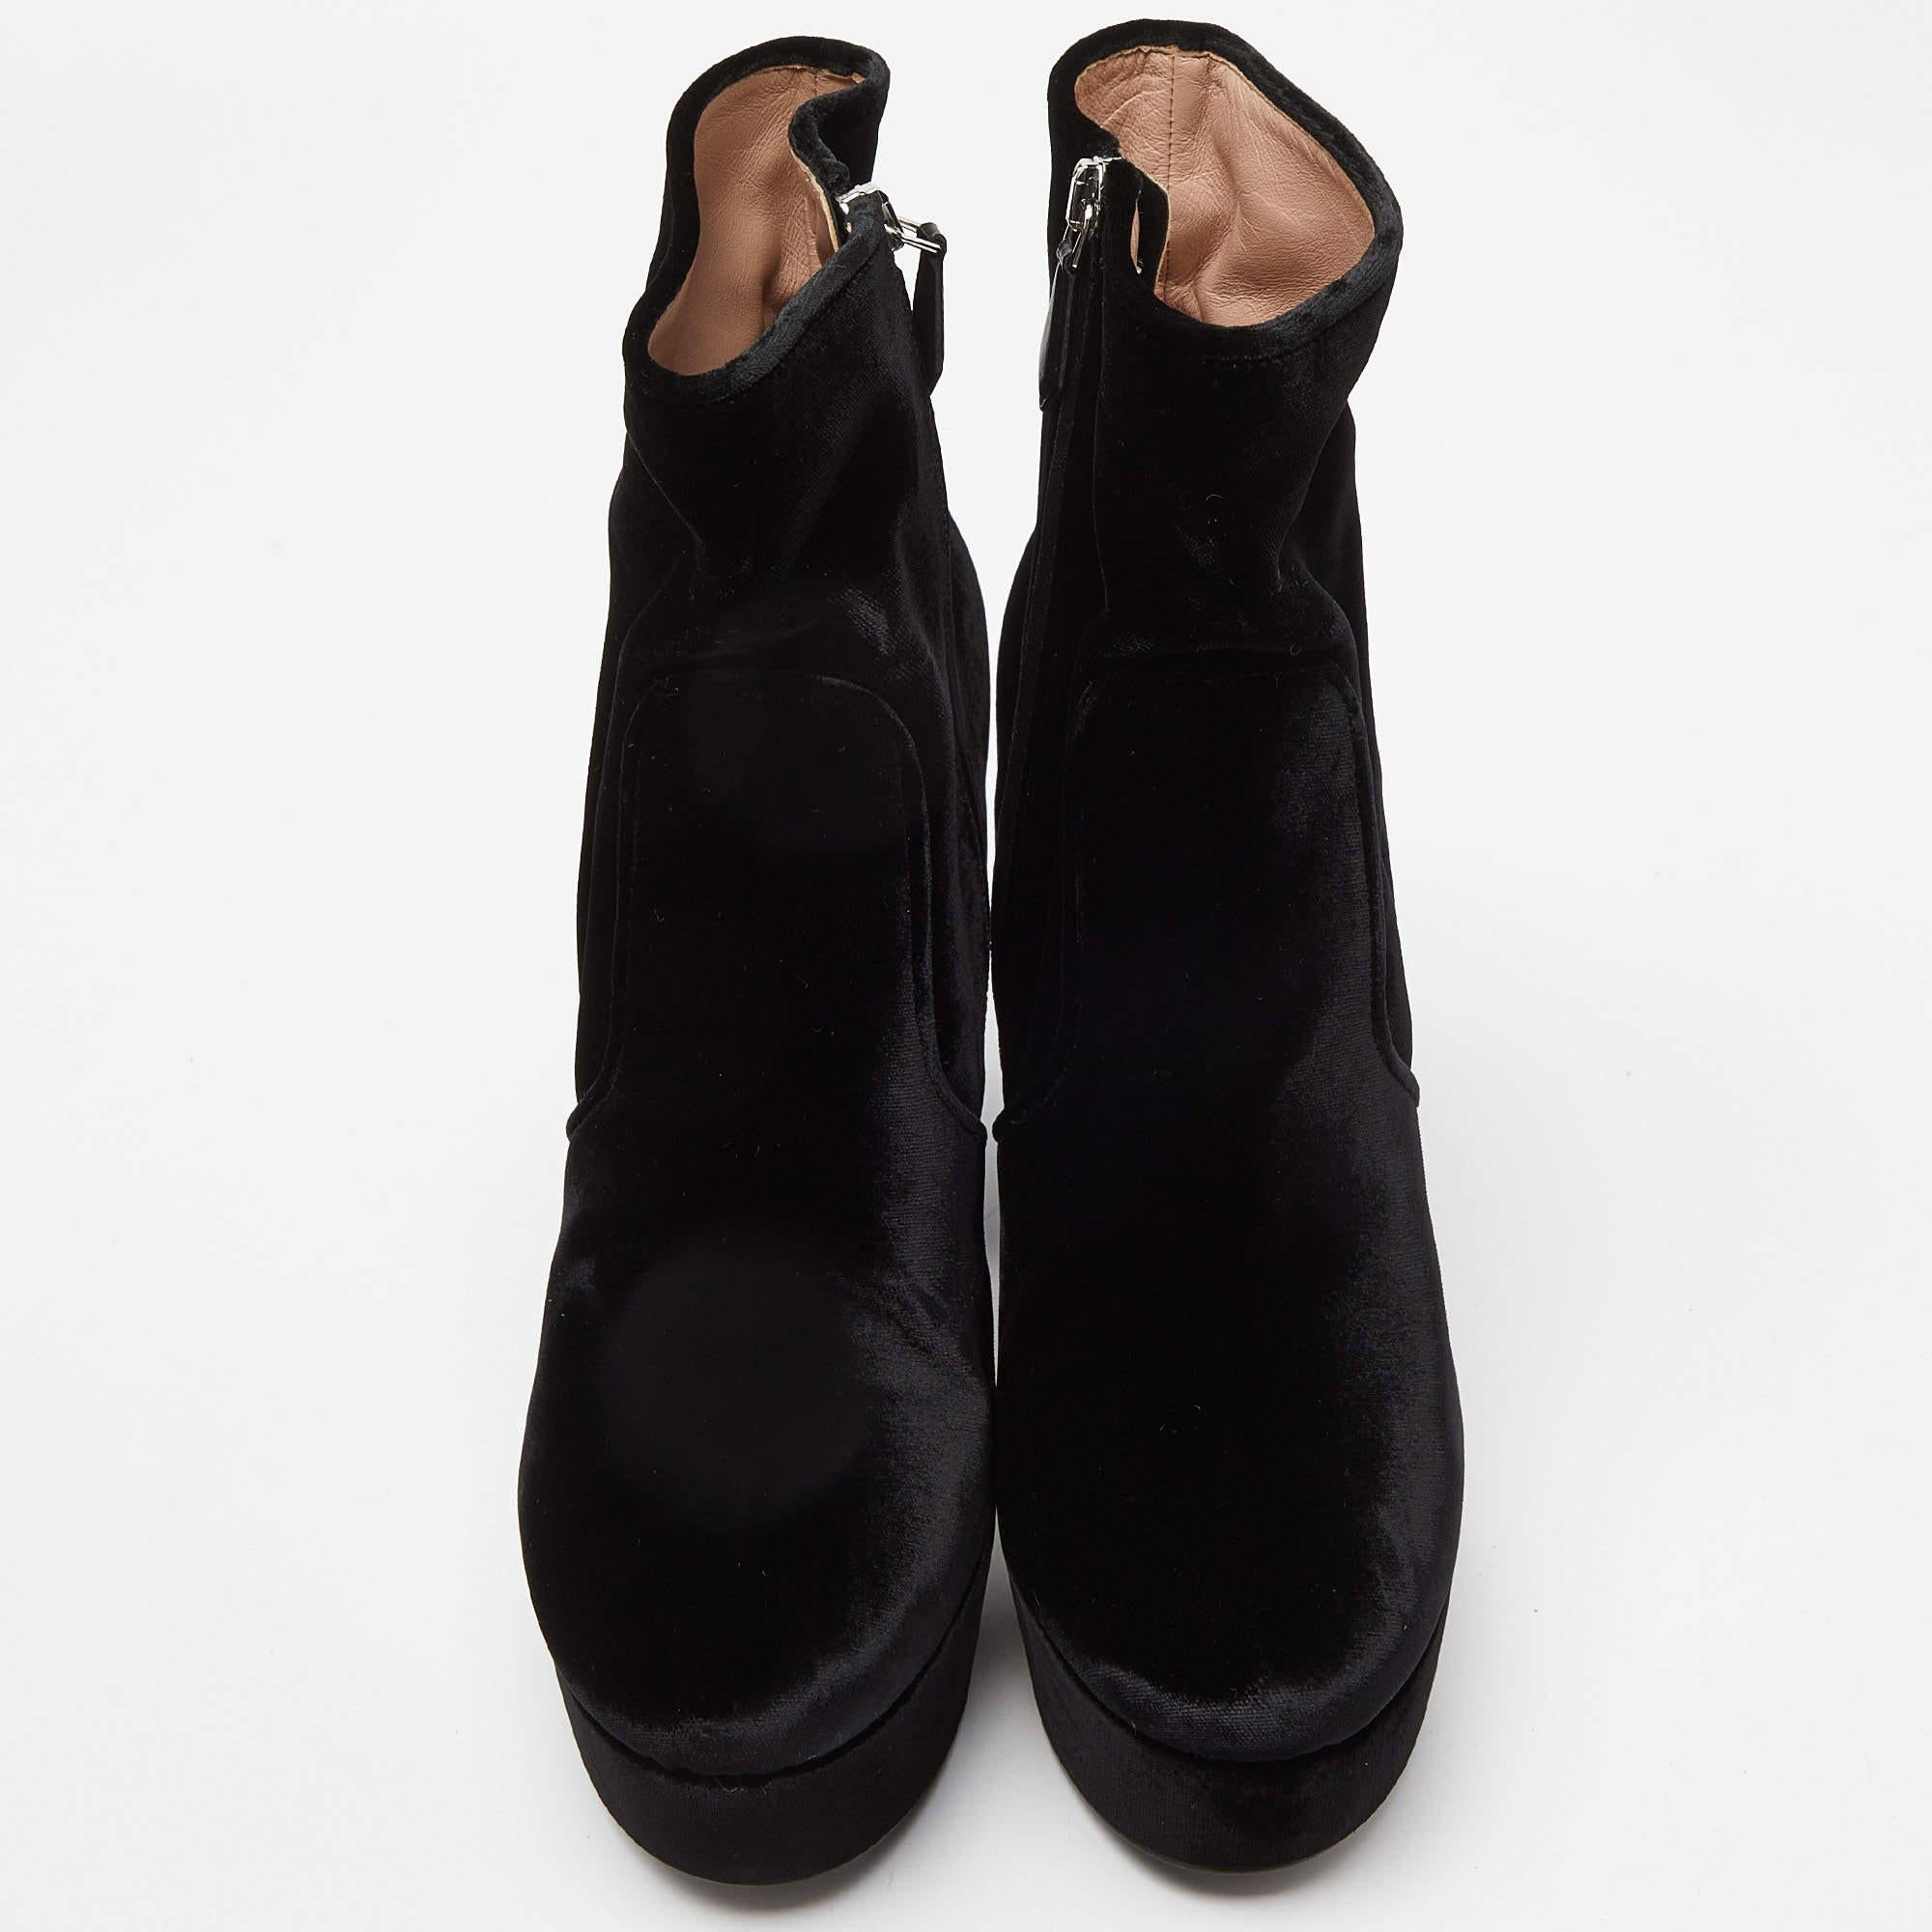 Diese Miu Miu Stiefel sind ein perfektes Paar stilvoller und mühelos auffälliger Schuhe, die Sie durch alle Jahreszeiten und Anlässe begleiten werden. Sie sind ein Muss in Ihrer Sammlung. Die aus schwarzem Samt gefertigten Stiefeletten haben einen